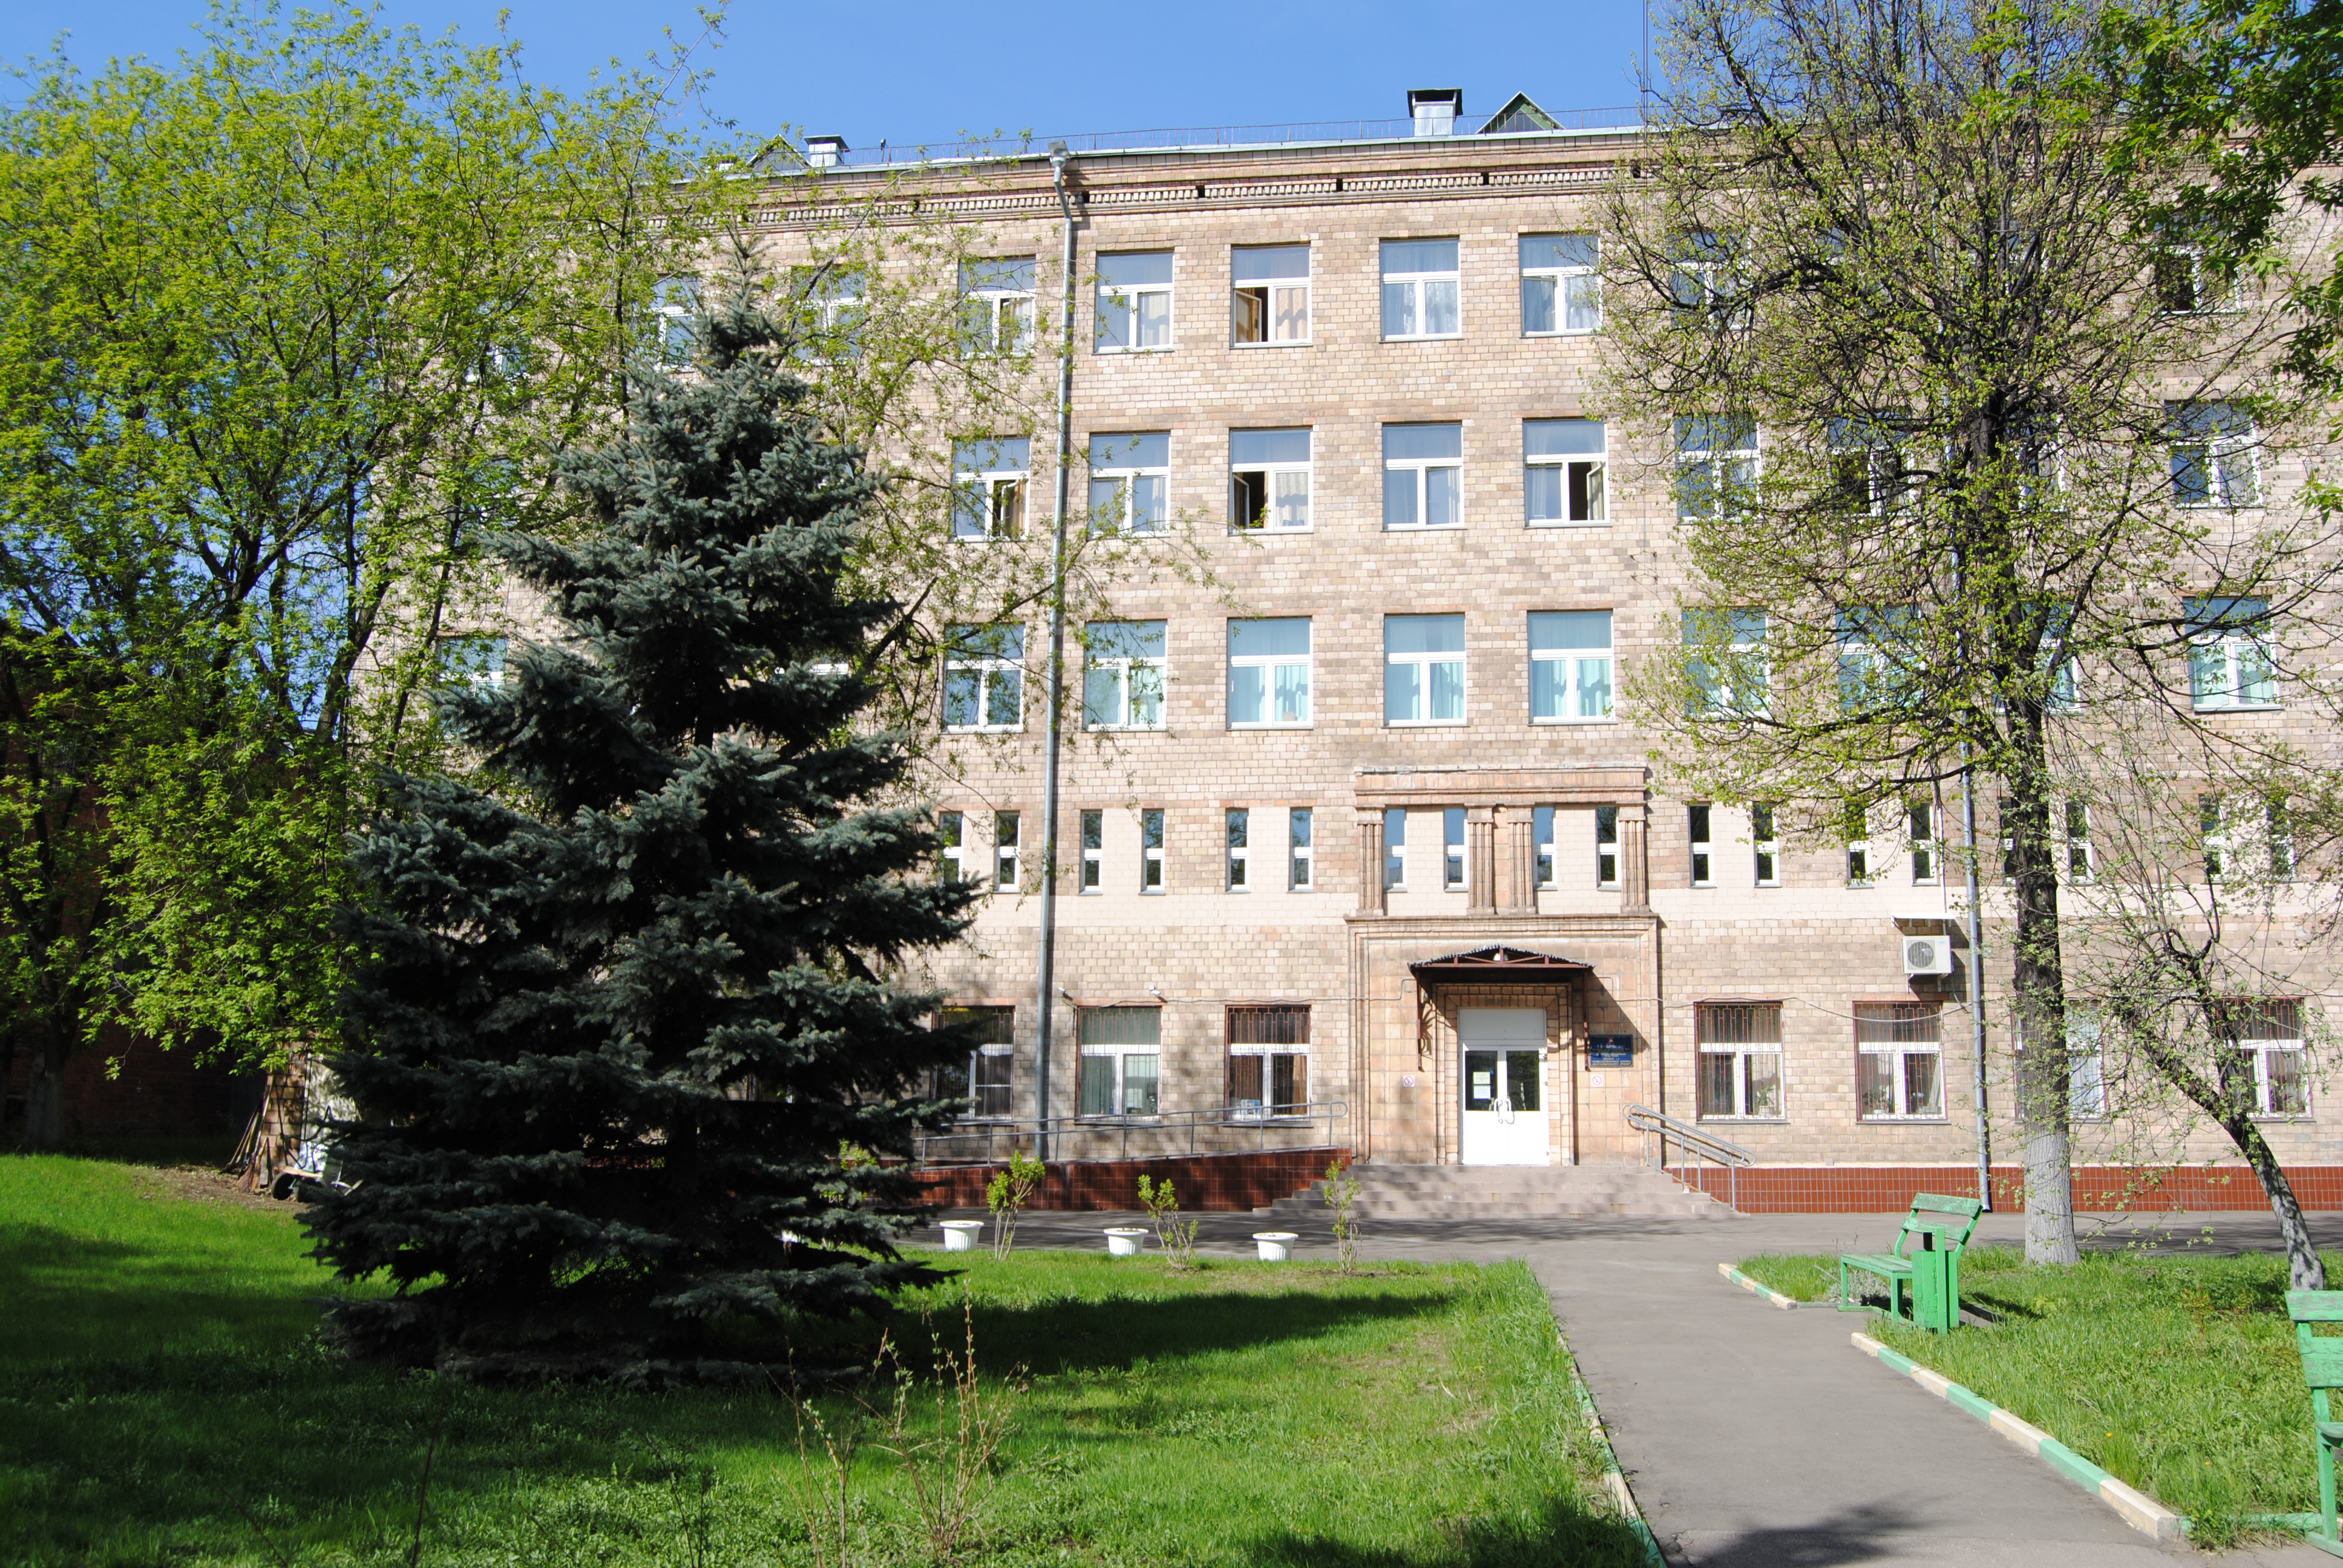 Московский научно-практический центр медицинской реабилитации (Некрасовка)